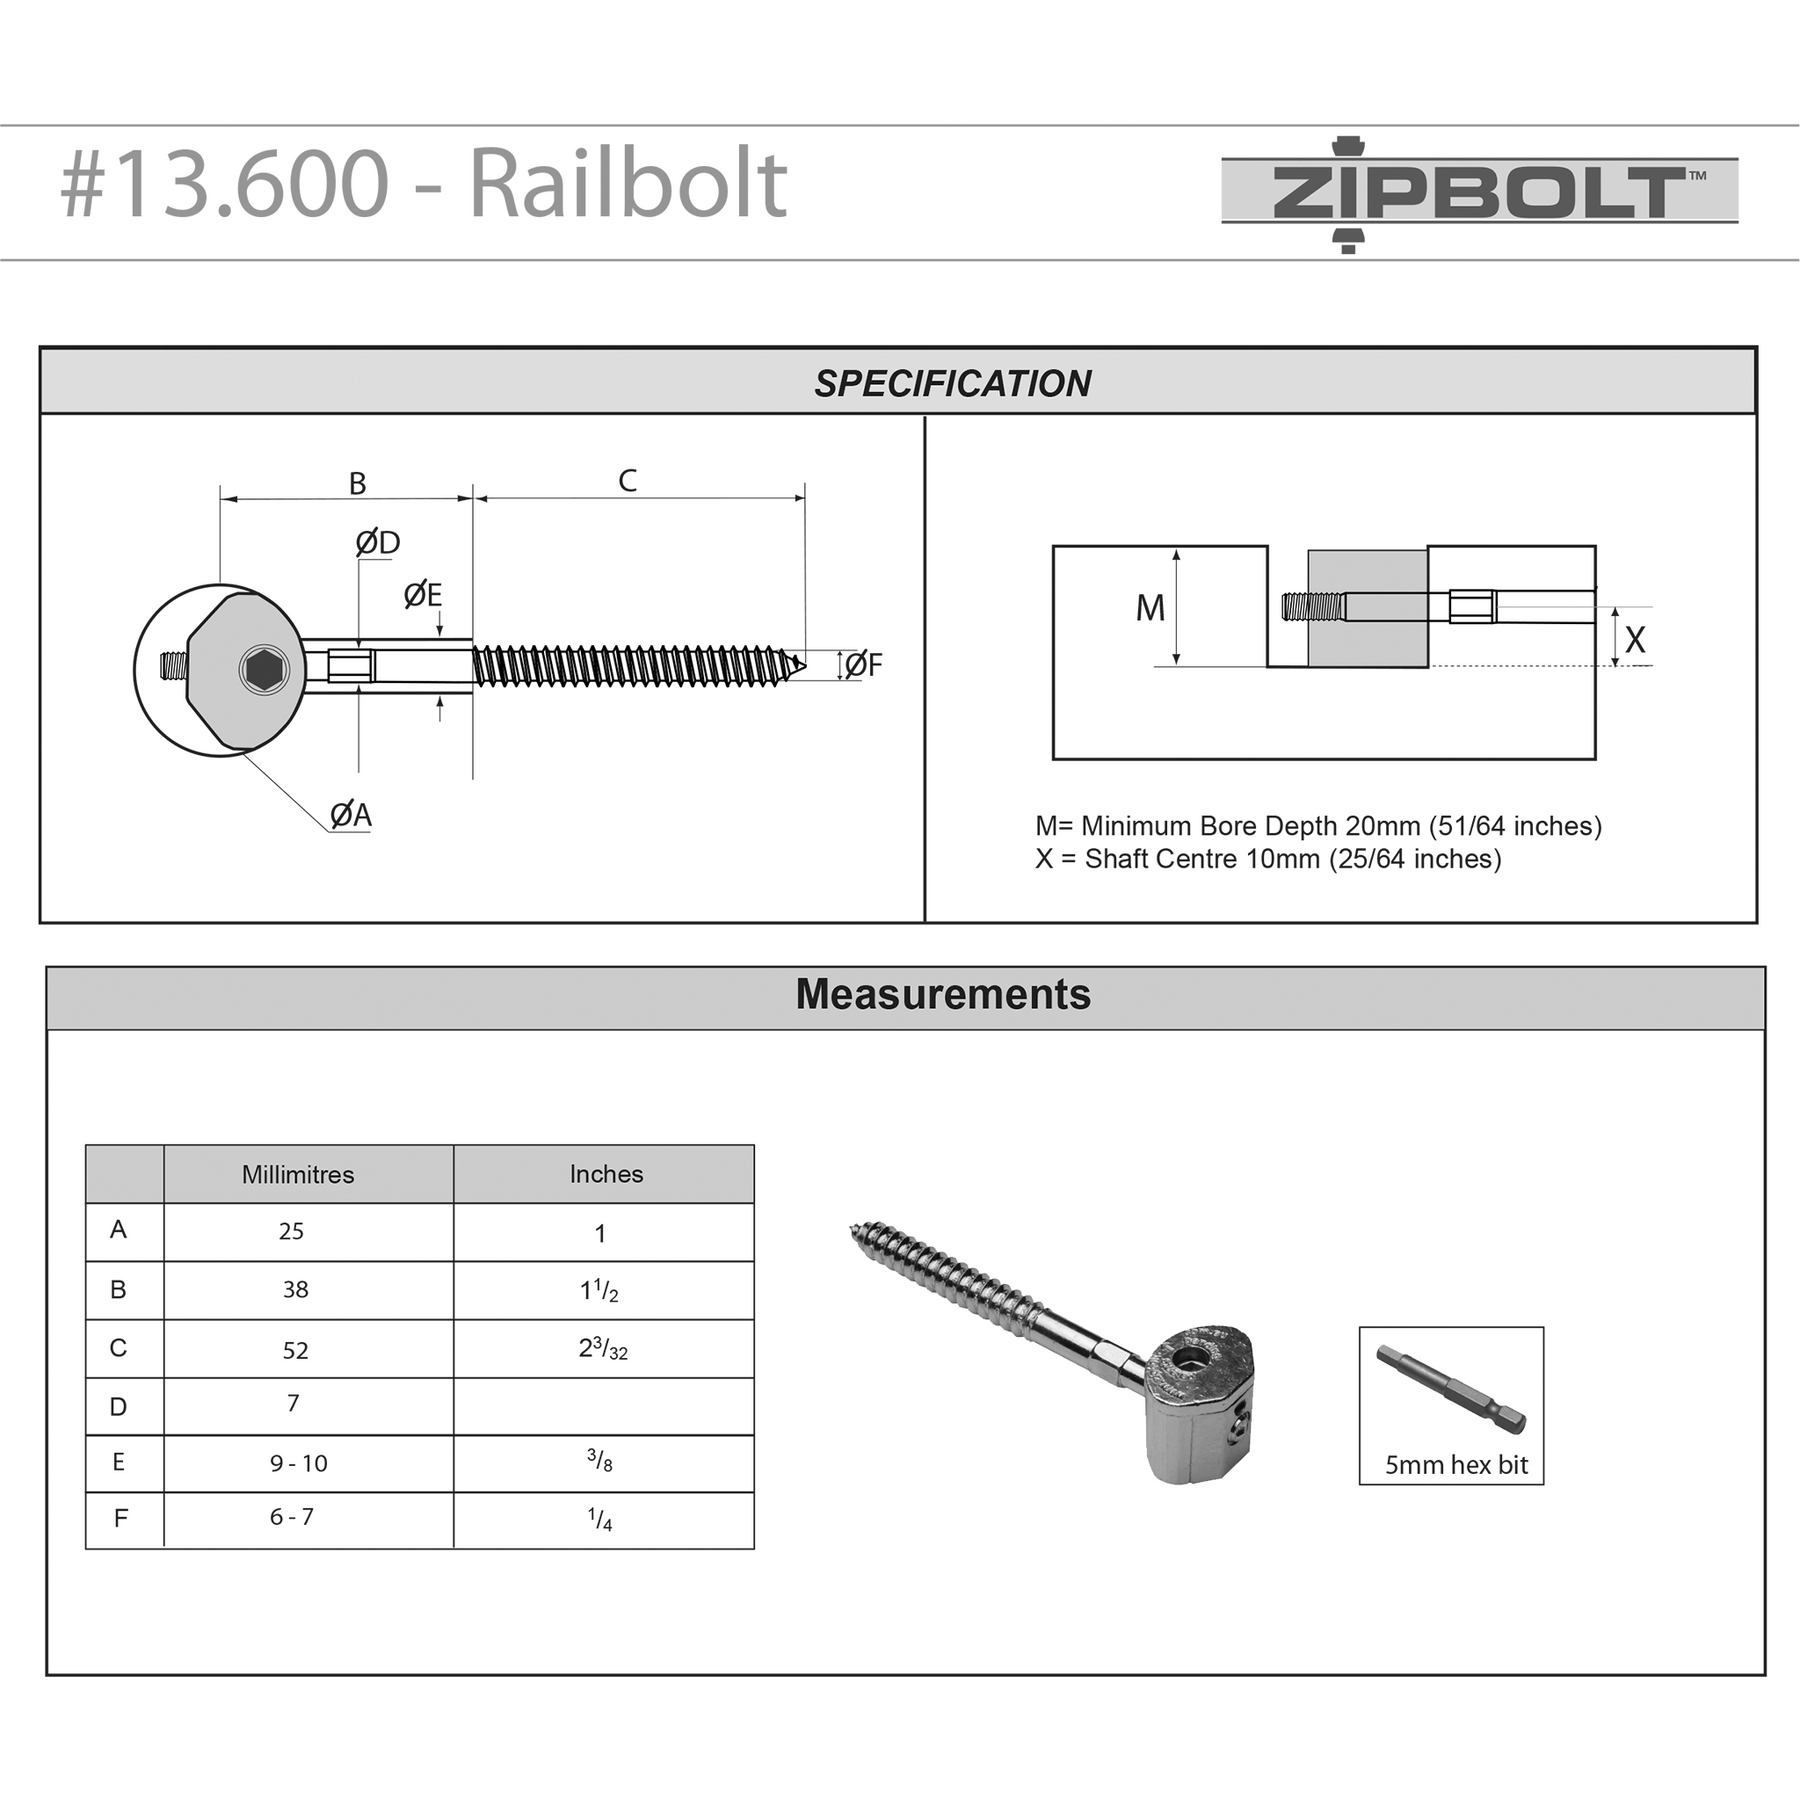 Zipbolt UT Railbolt 13.600